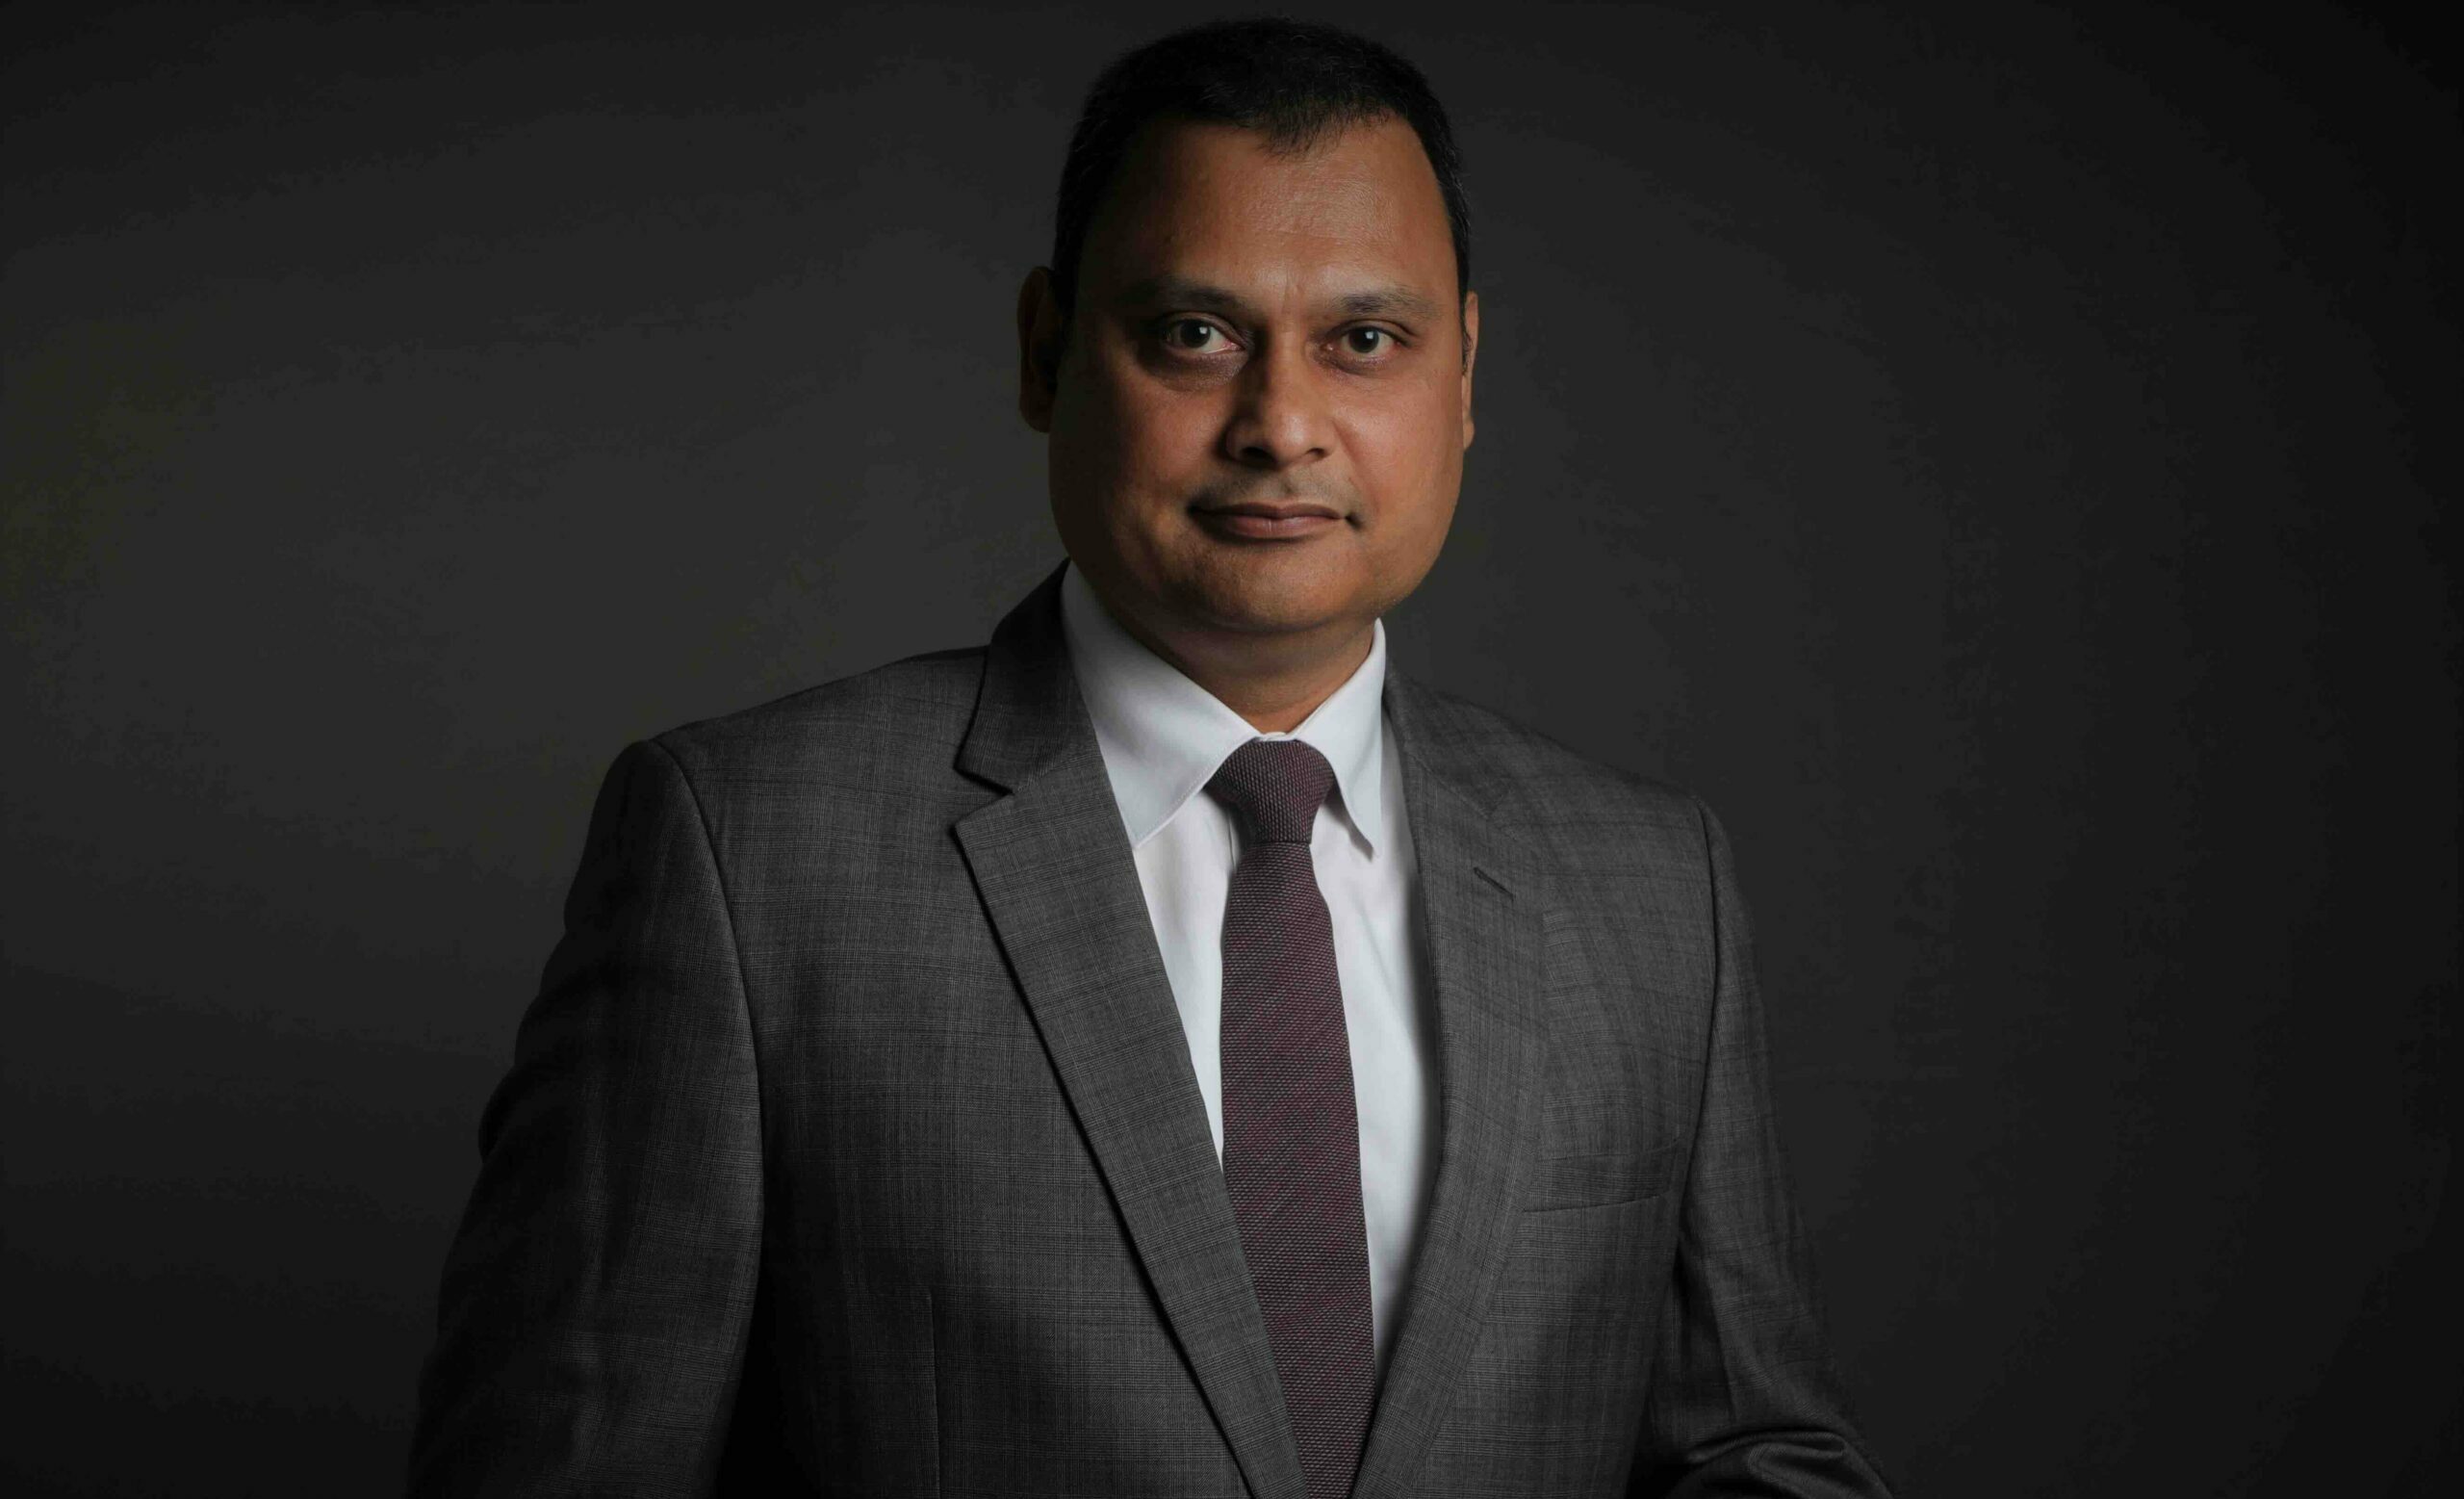 Shri Vishal Prakash Shah, Founder & CEO, Synersoft